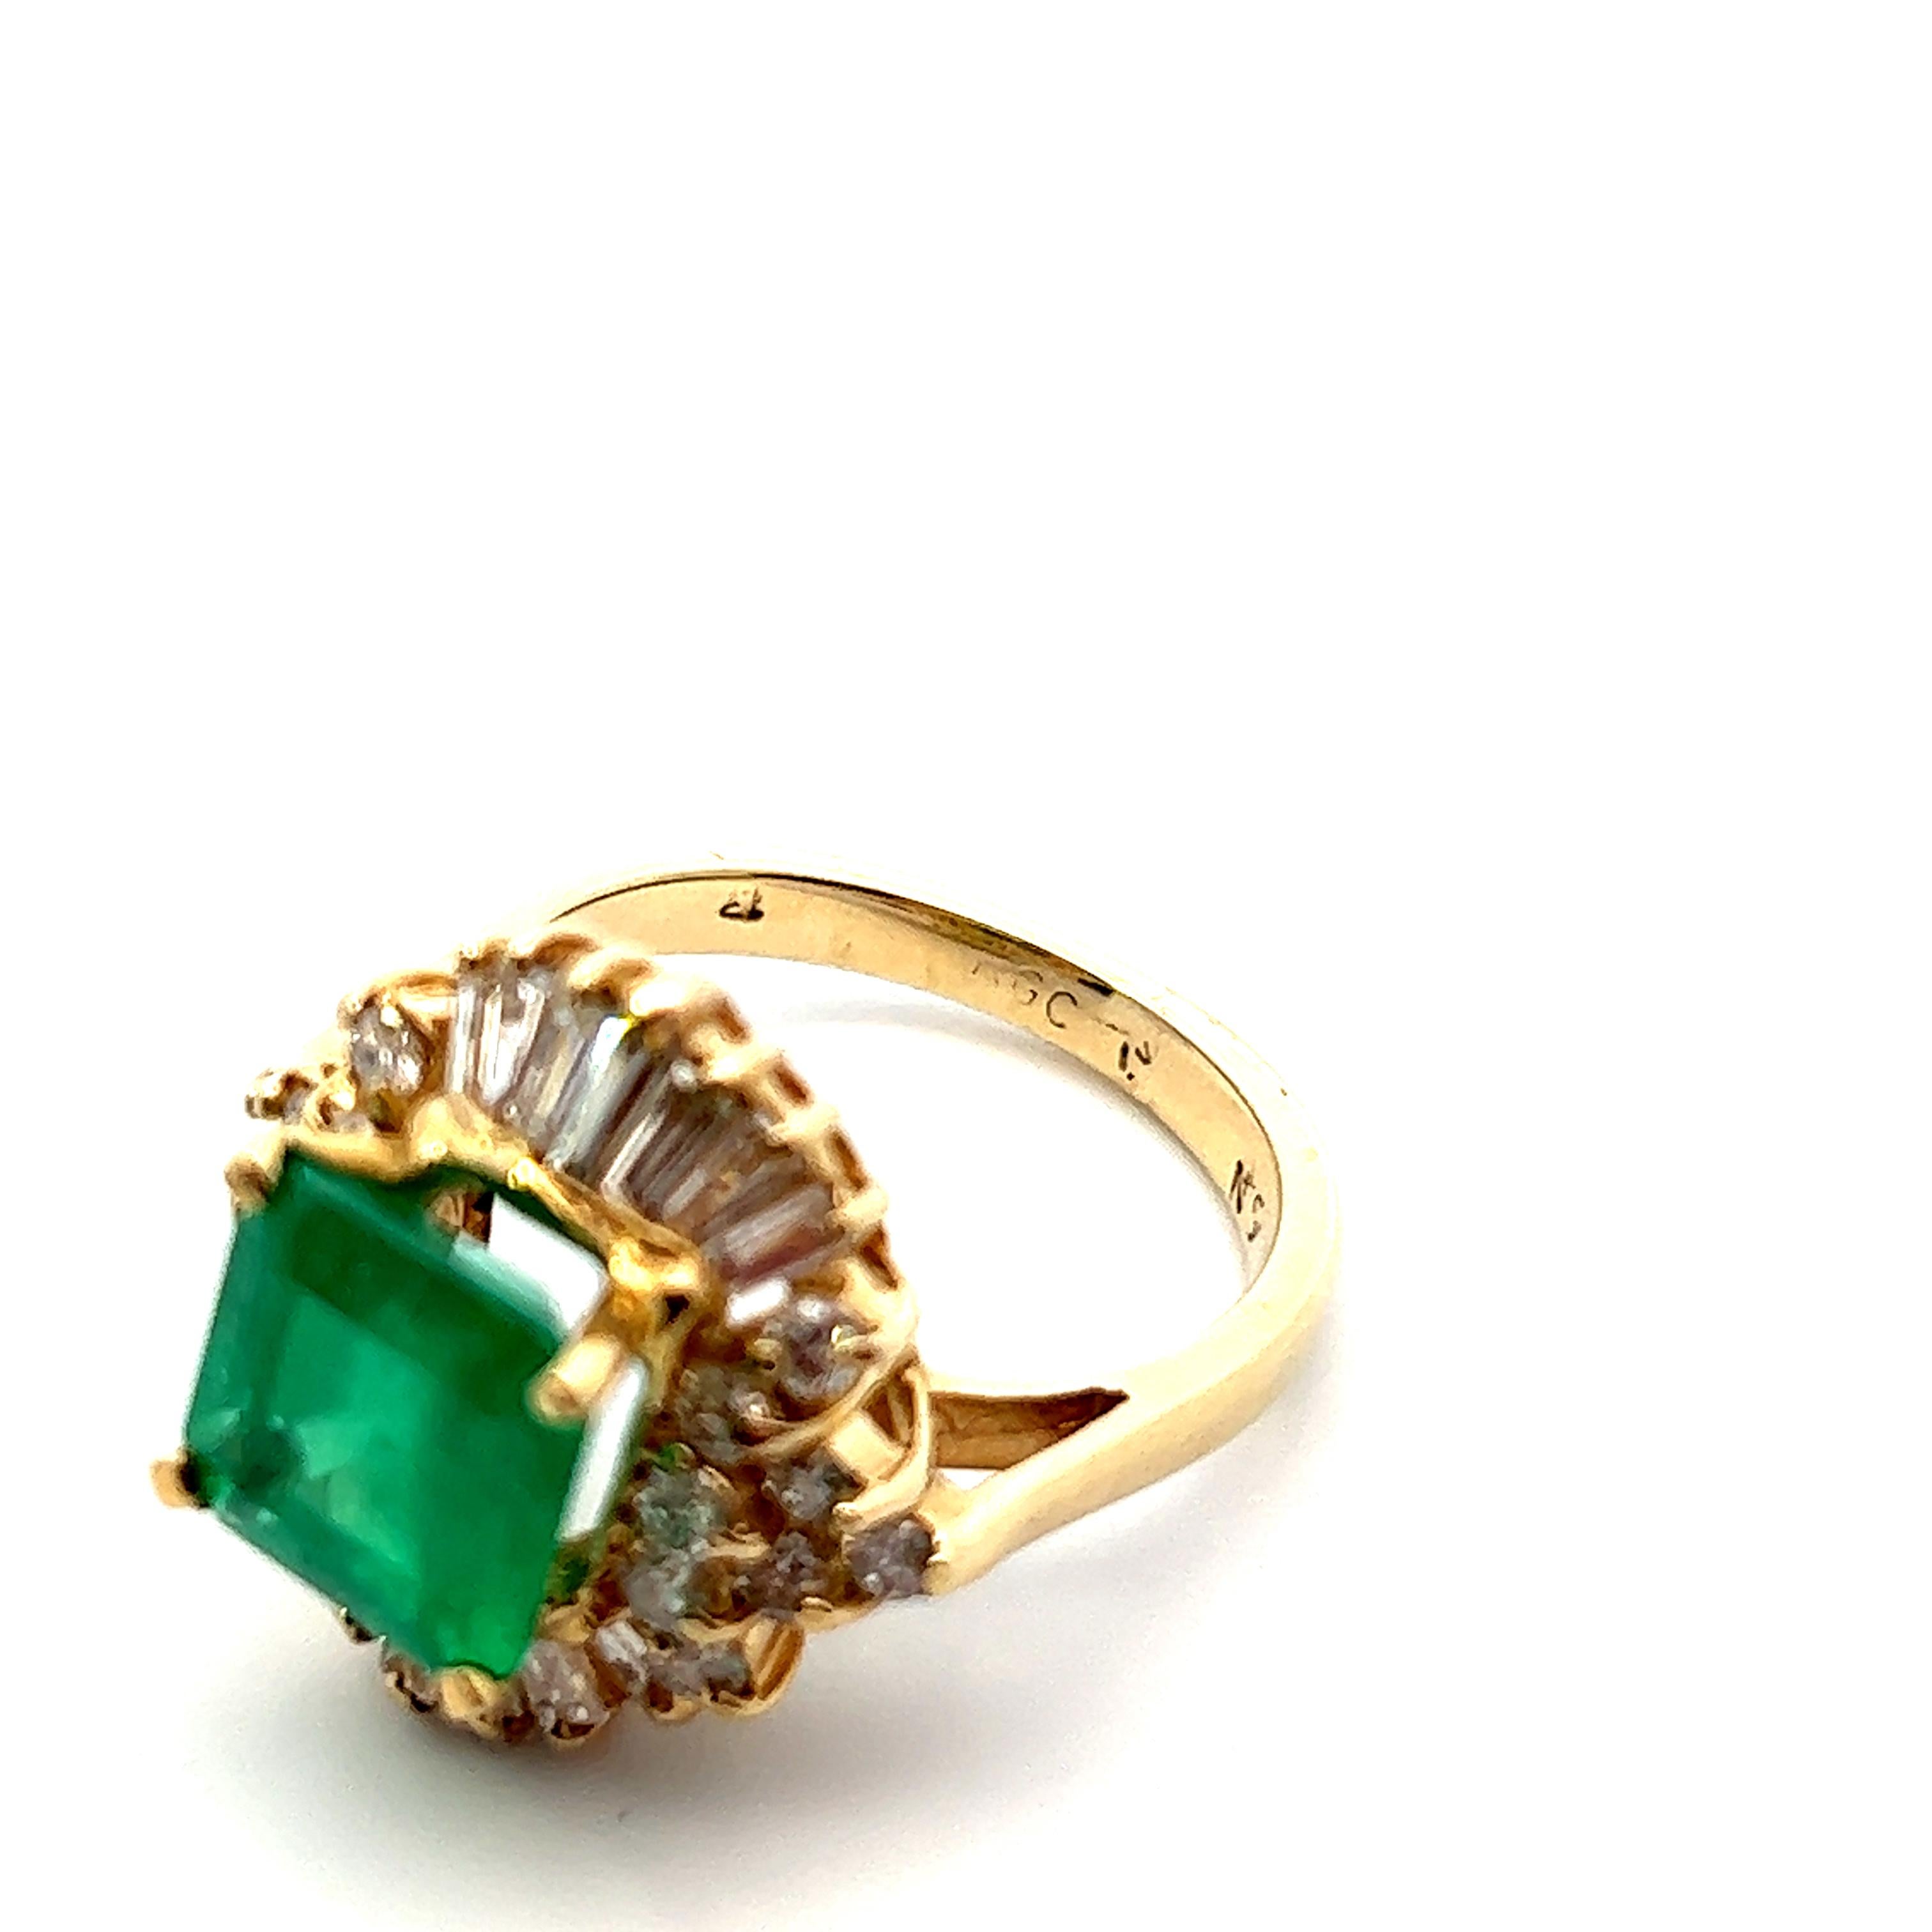 Dieser schöne Retro-Ring aus den 1960er-Jahren ist mit einem Smaragd und einem Diamanten sowie mit Zacken aus 14- und 18-karätigem Gelbgold versehen. Die geschmackvolle Mischung aus Smaragd und Diamant schafft einen modischen Statement-Ring, der die